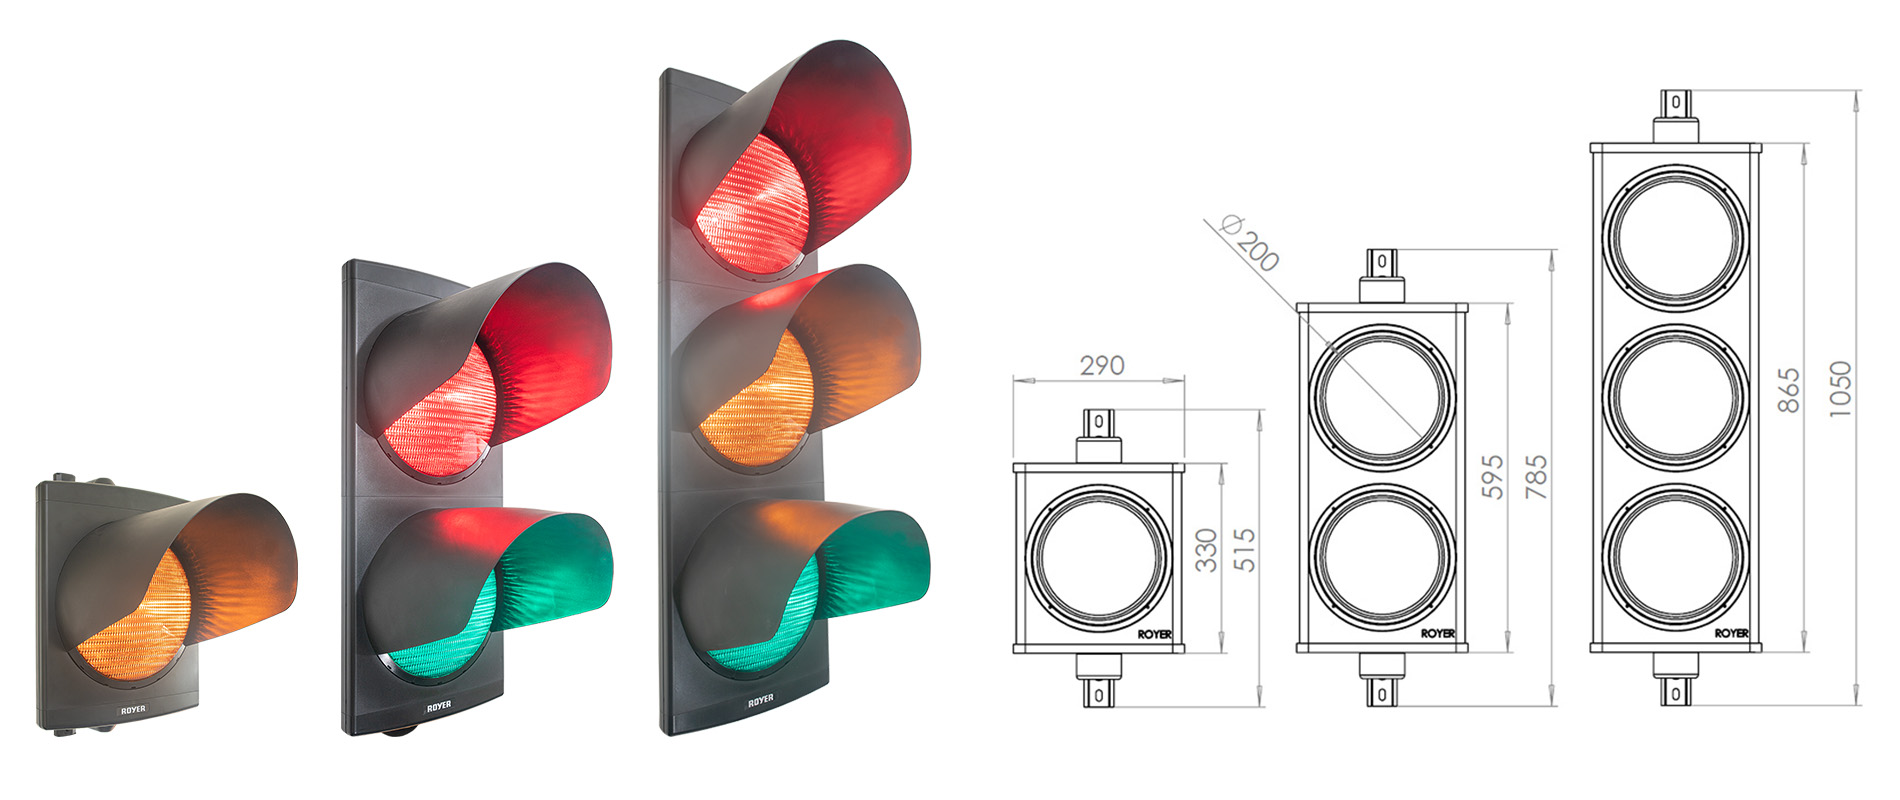 Drei verschiedenen Konfigurationen der großen LED-Ampel LS300 von ROYER Signaltechnik mit zusätzlicher Zeichnung der Abmessungen